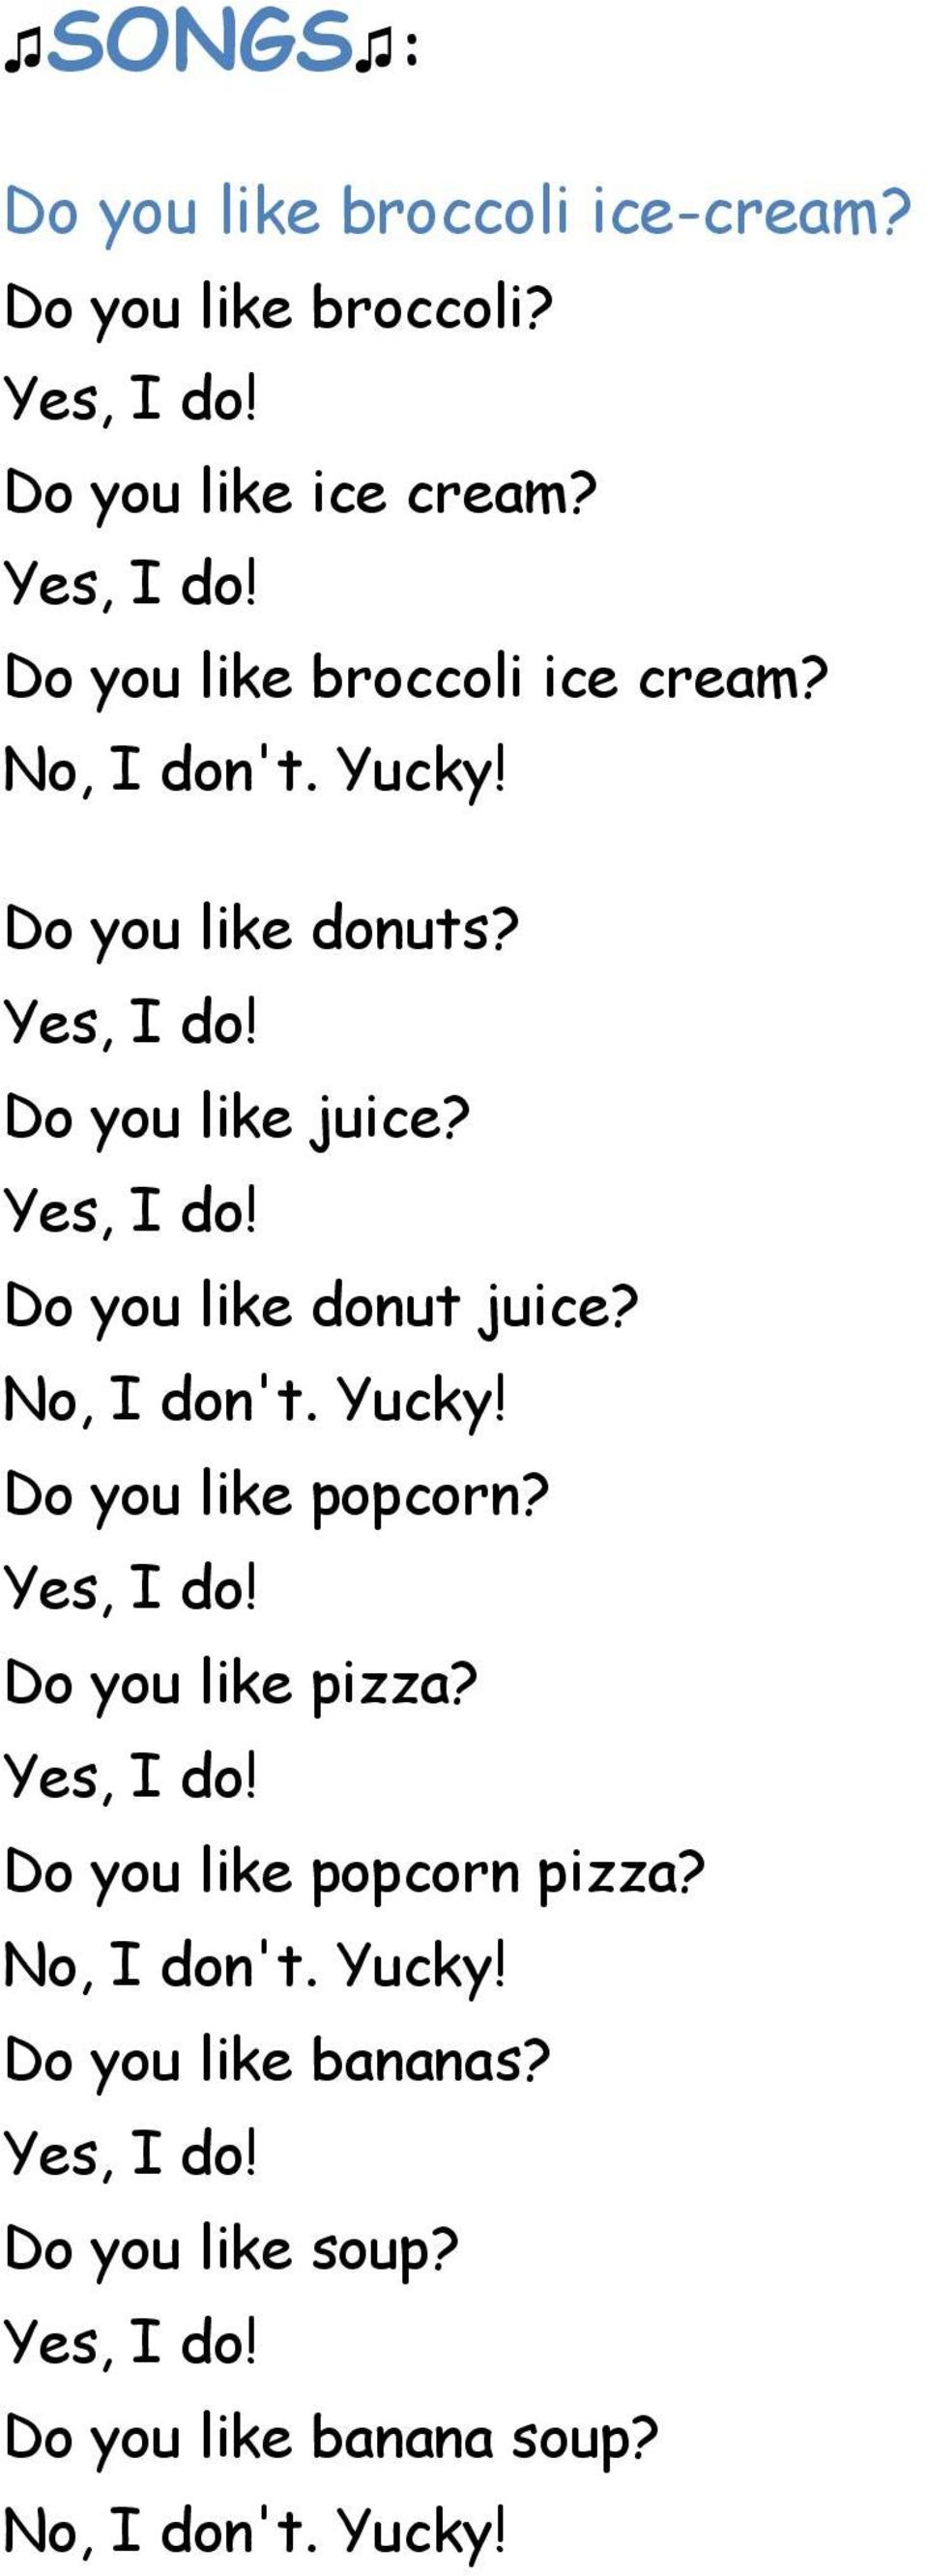 Do you like donut juice? Do you like popcorn? Do you like pizza?